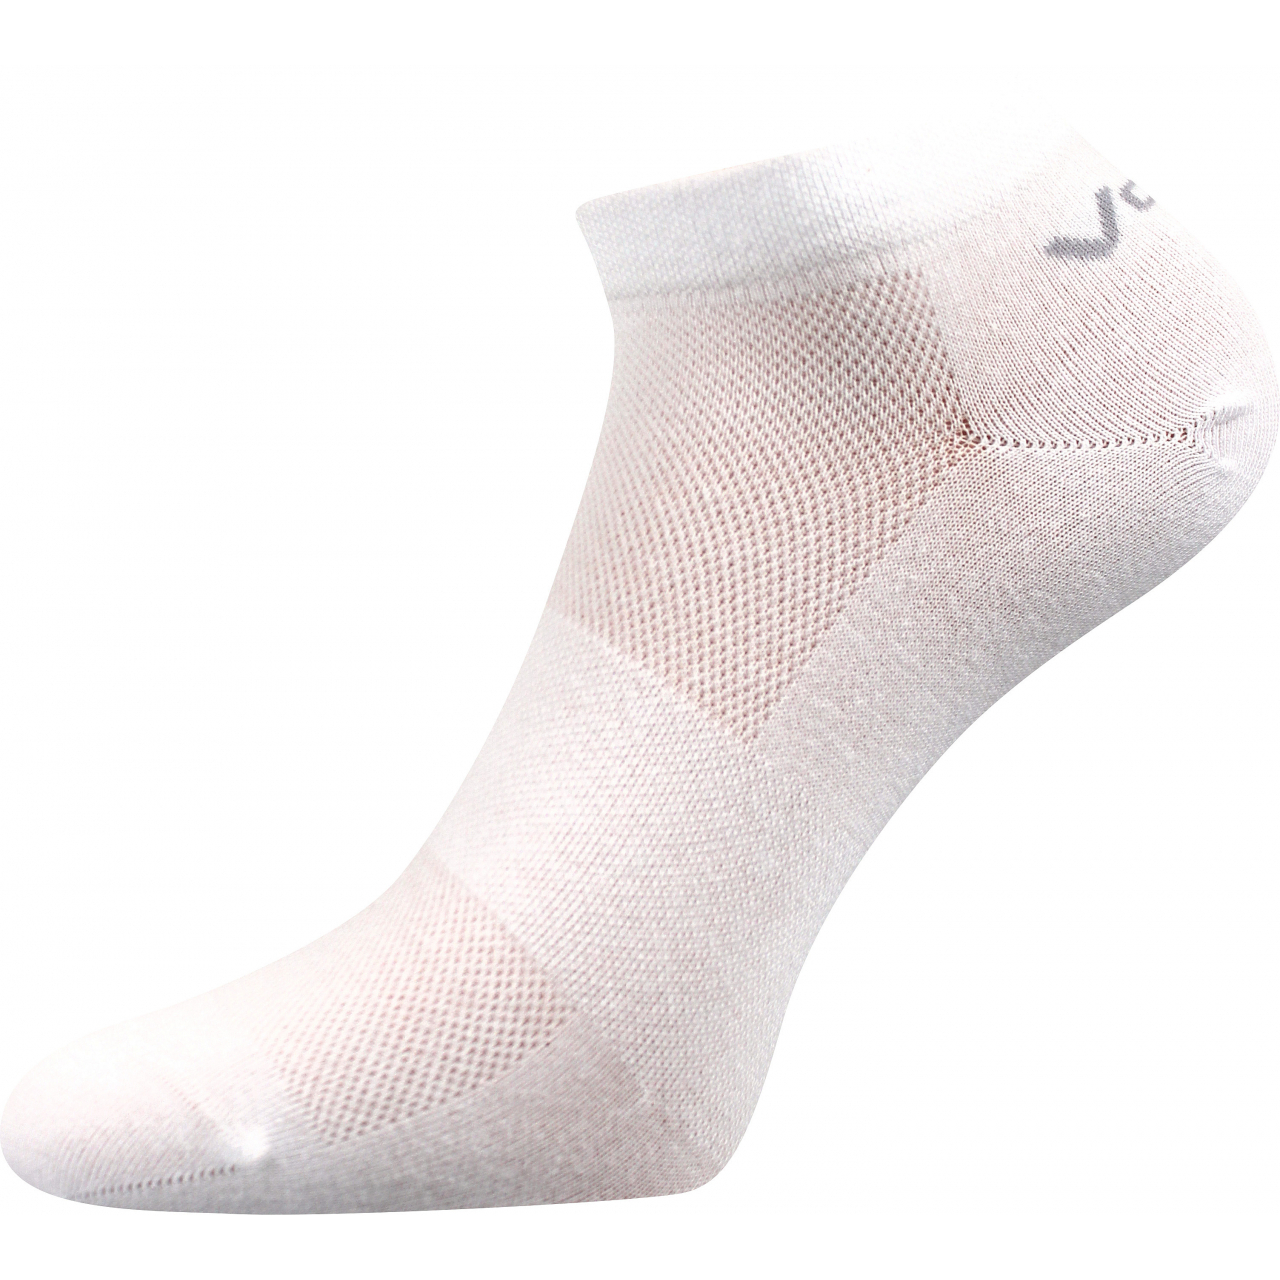 Ponožky unisex klasické Voxx Metys - bílé, 35-38